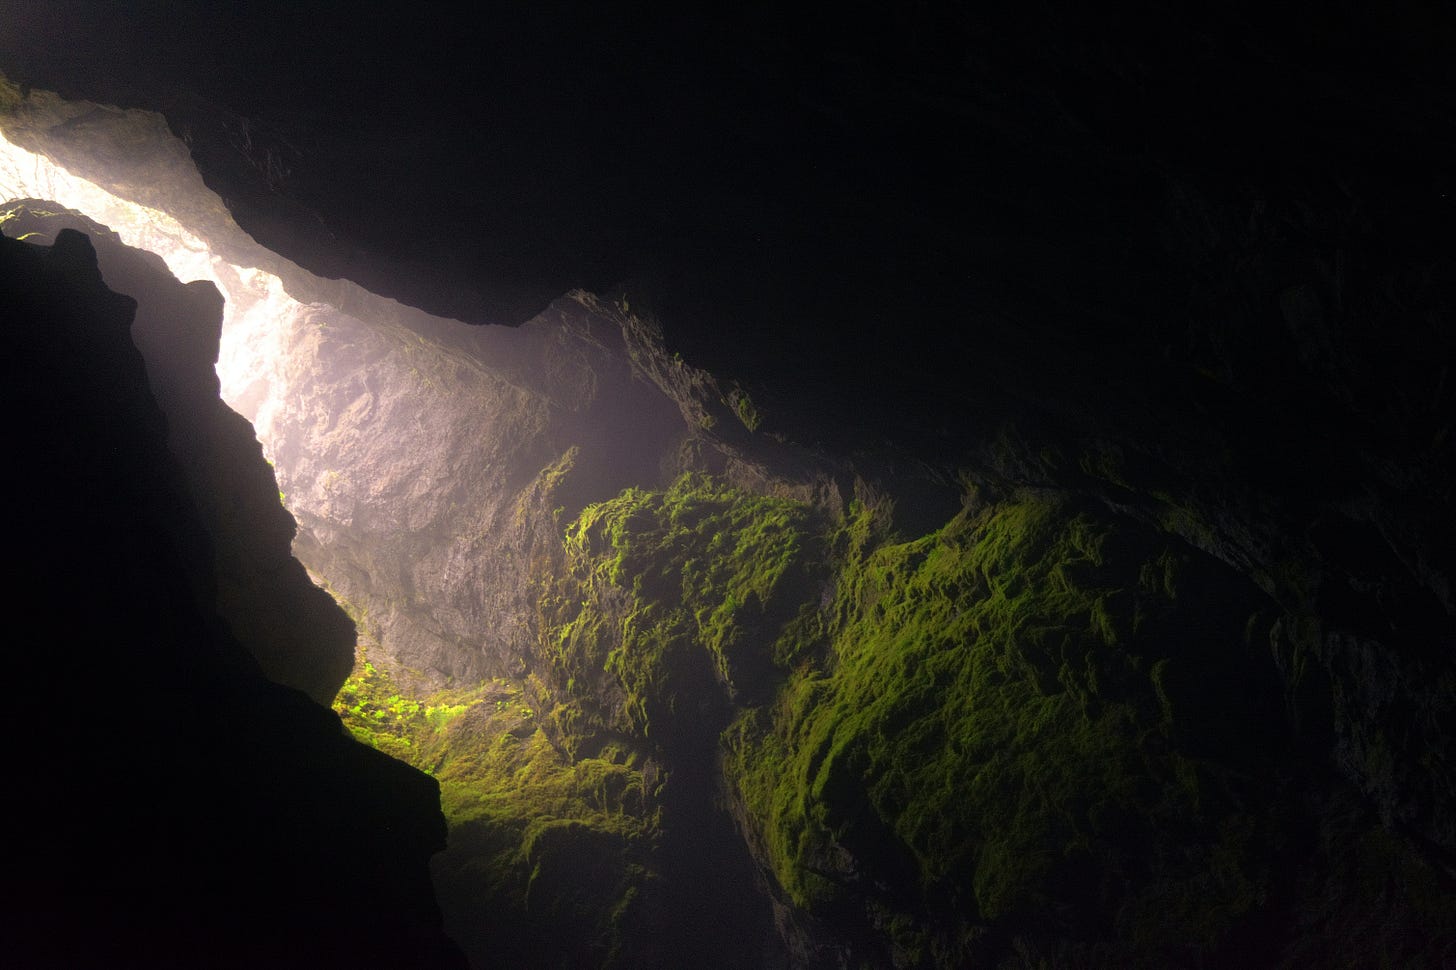 interno di una grotta con rocce muschiate e luce che penetra dall'esterno